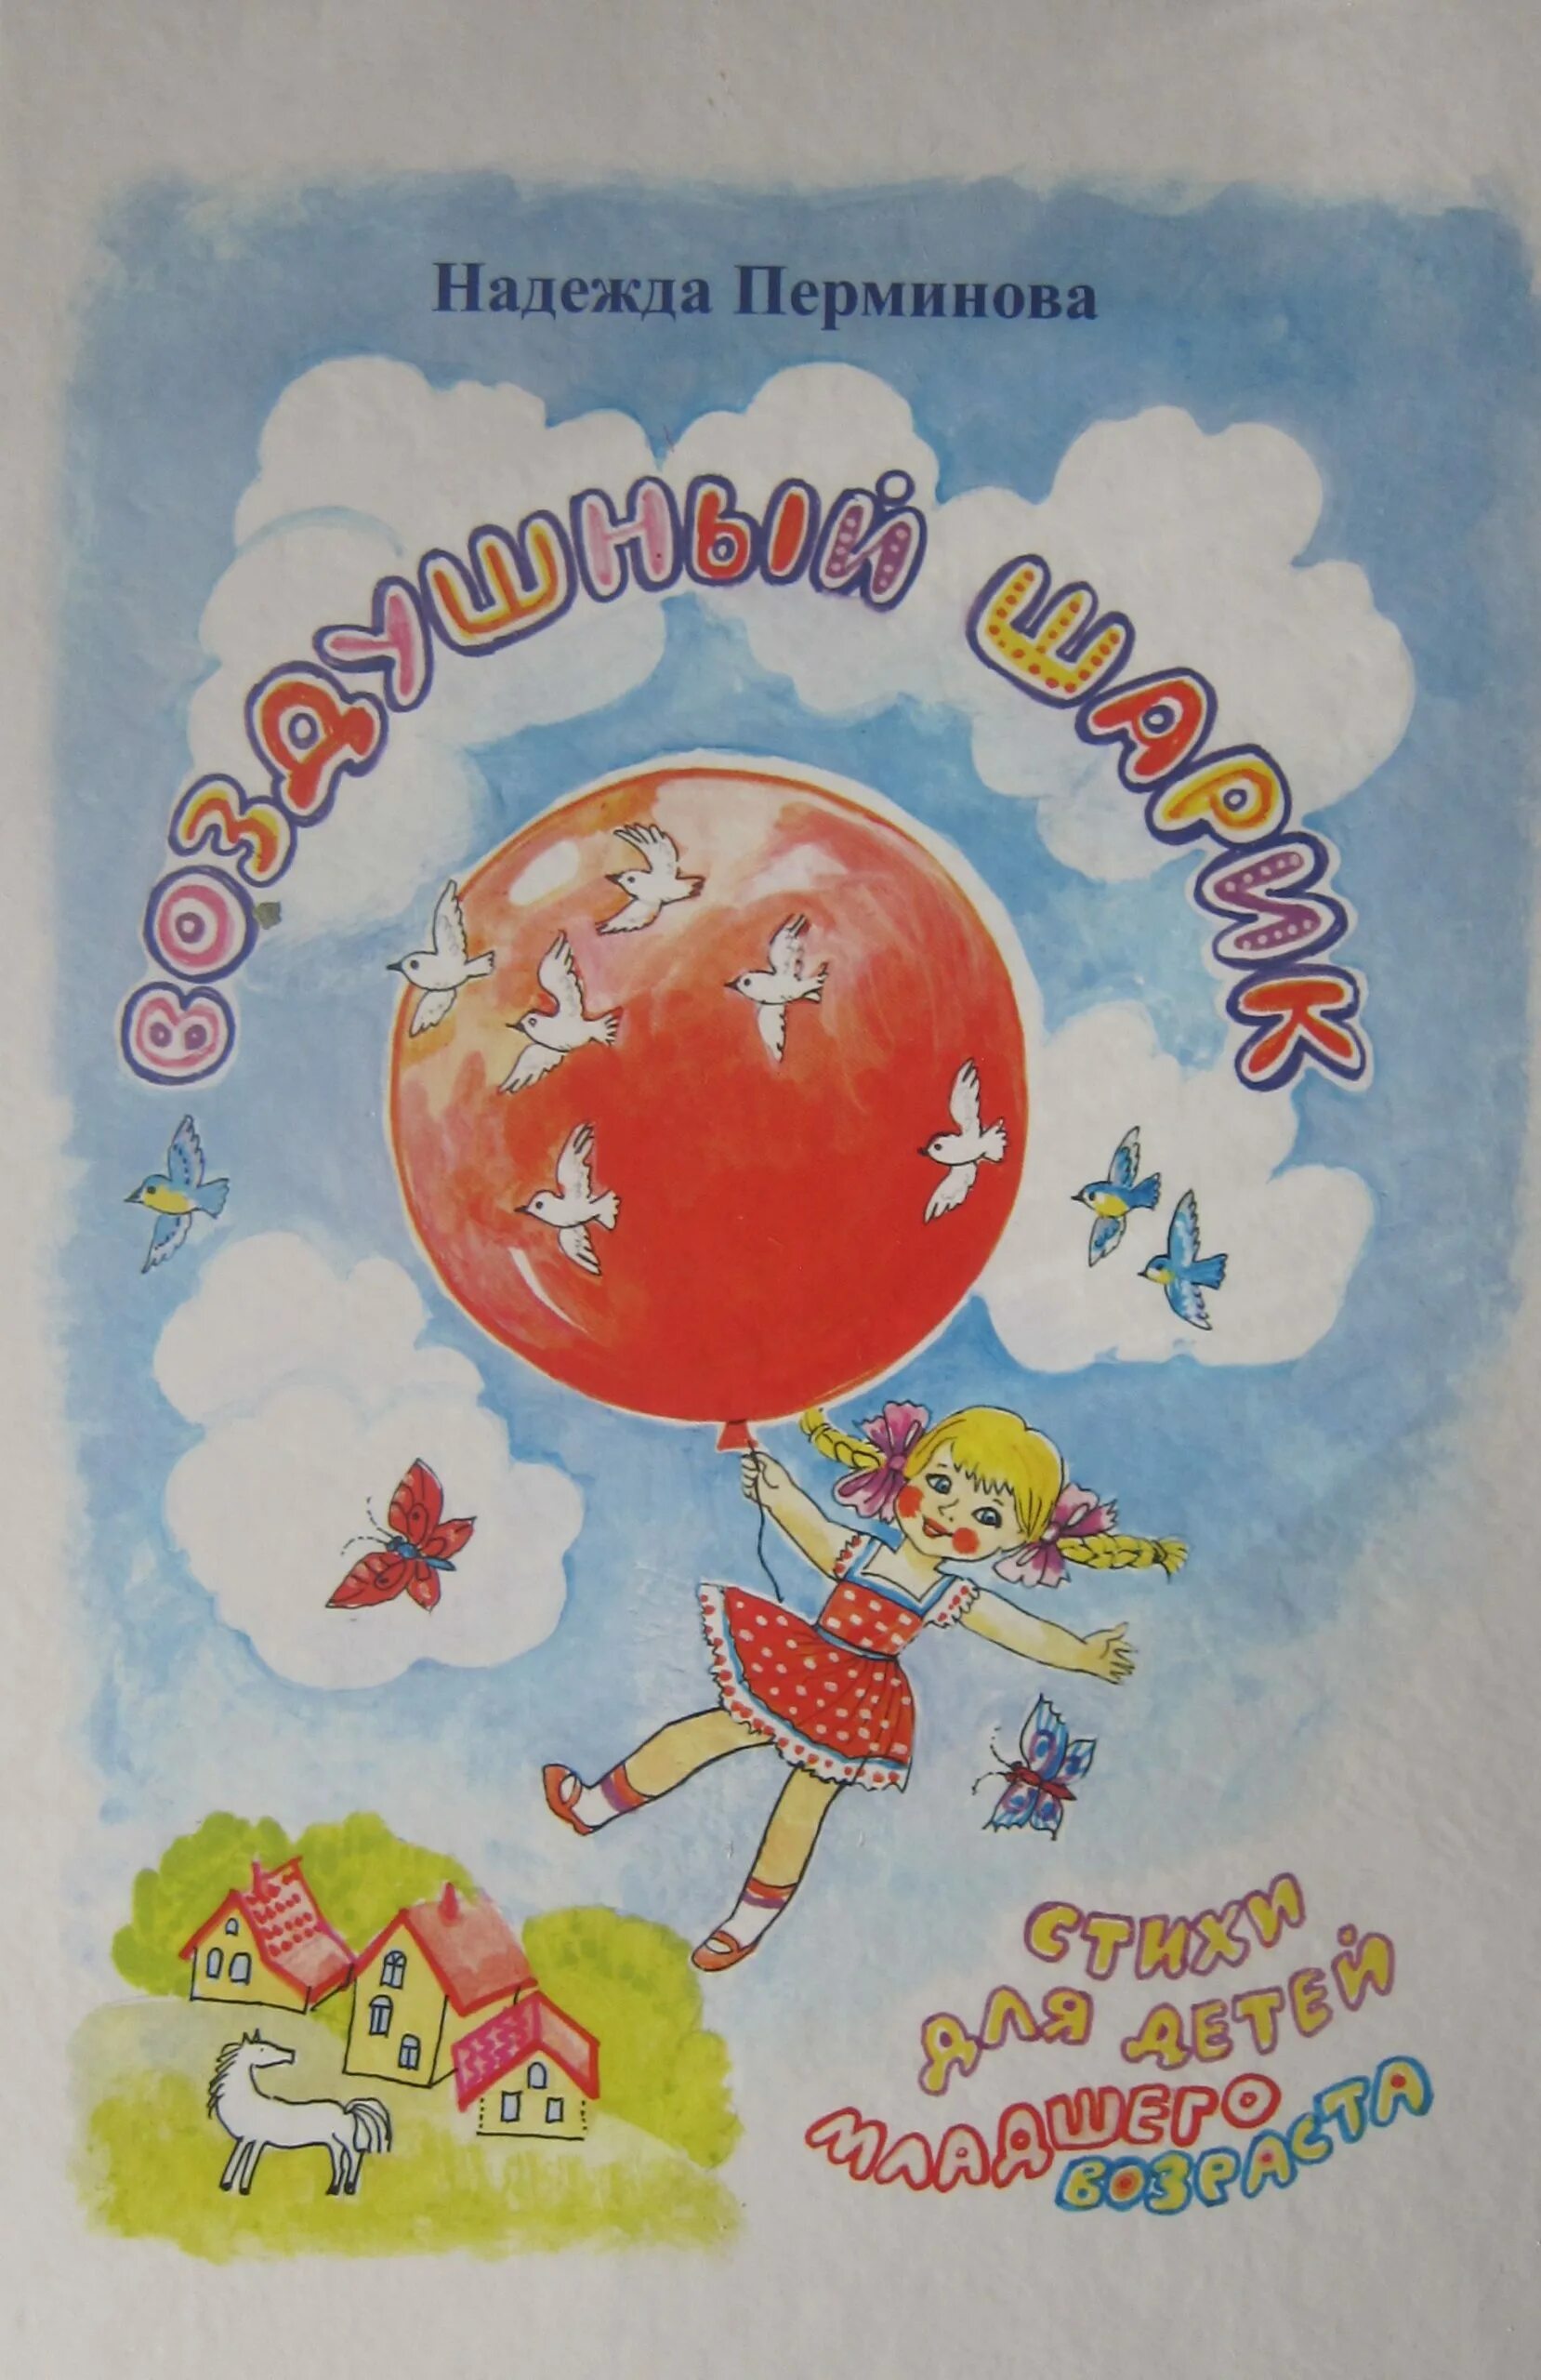 Перминова воздушный шарик книга. Книги о воздушных шарах. Путешествие на воздушных шарах книга. Книги про воздушные шары.